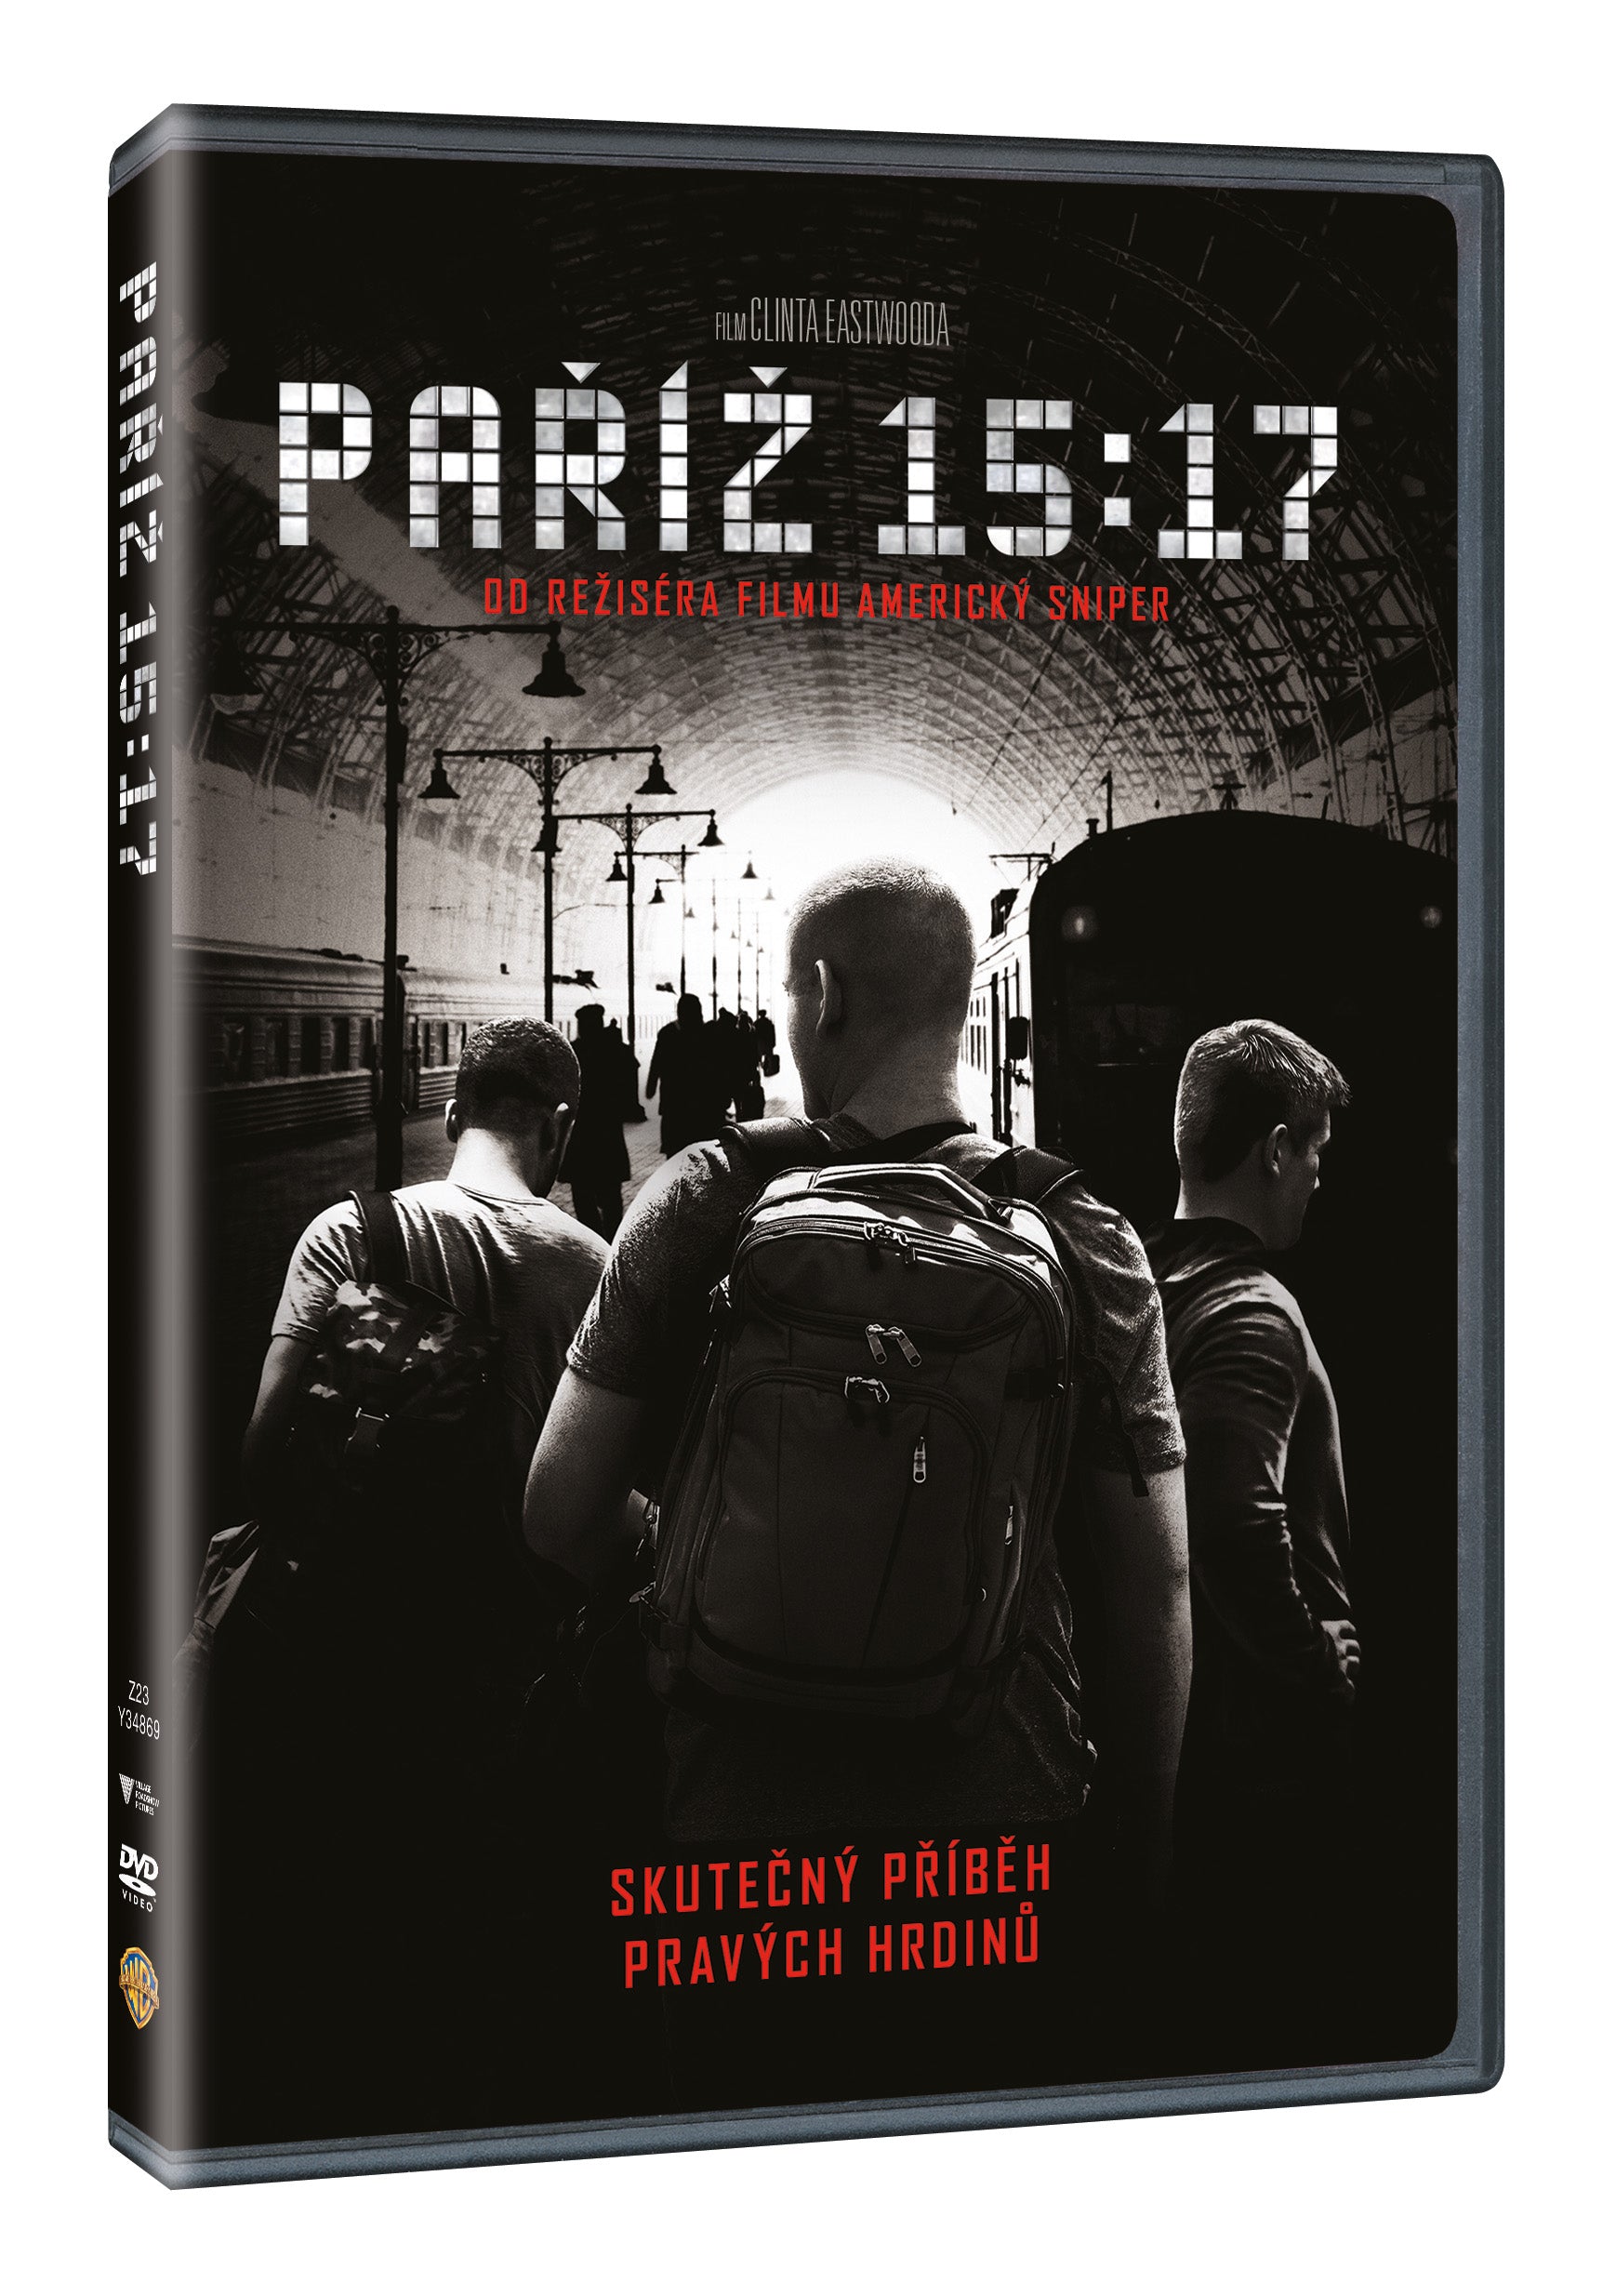 Pariz 15:17 DVD / Die 15:17 nach Paris